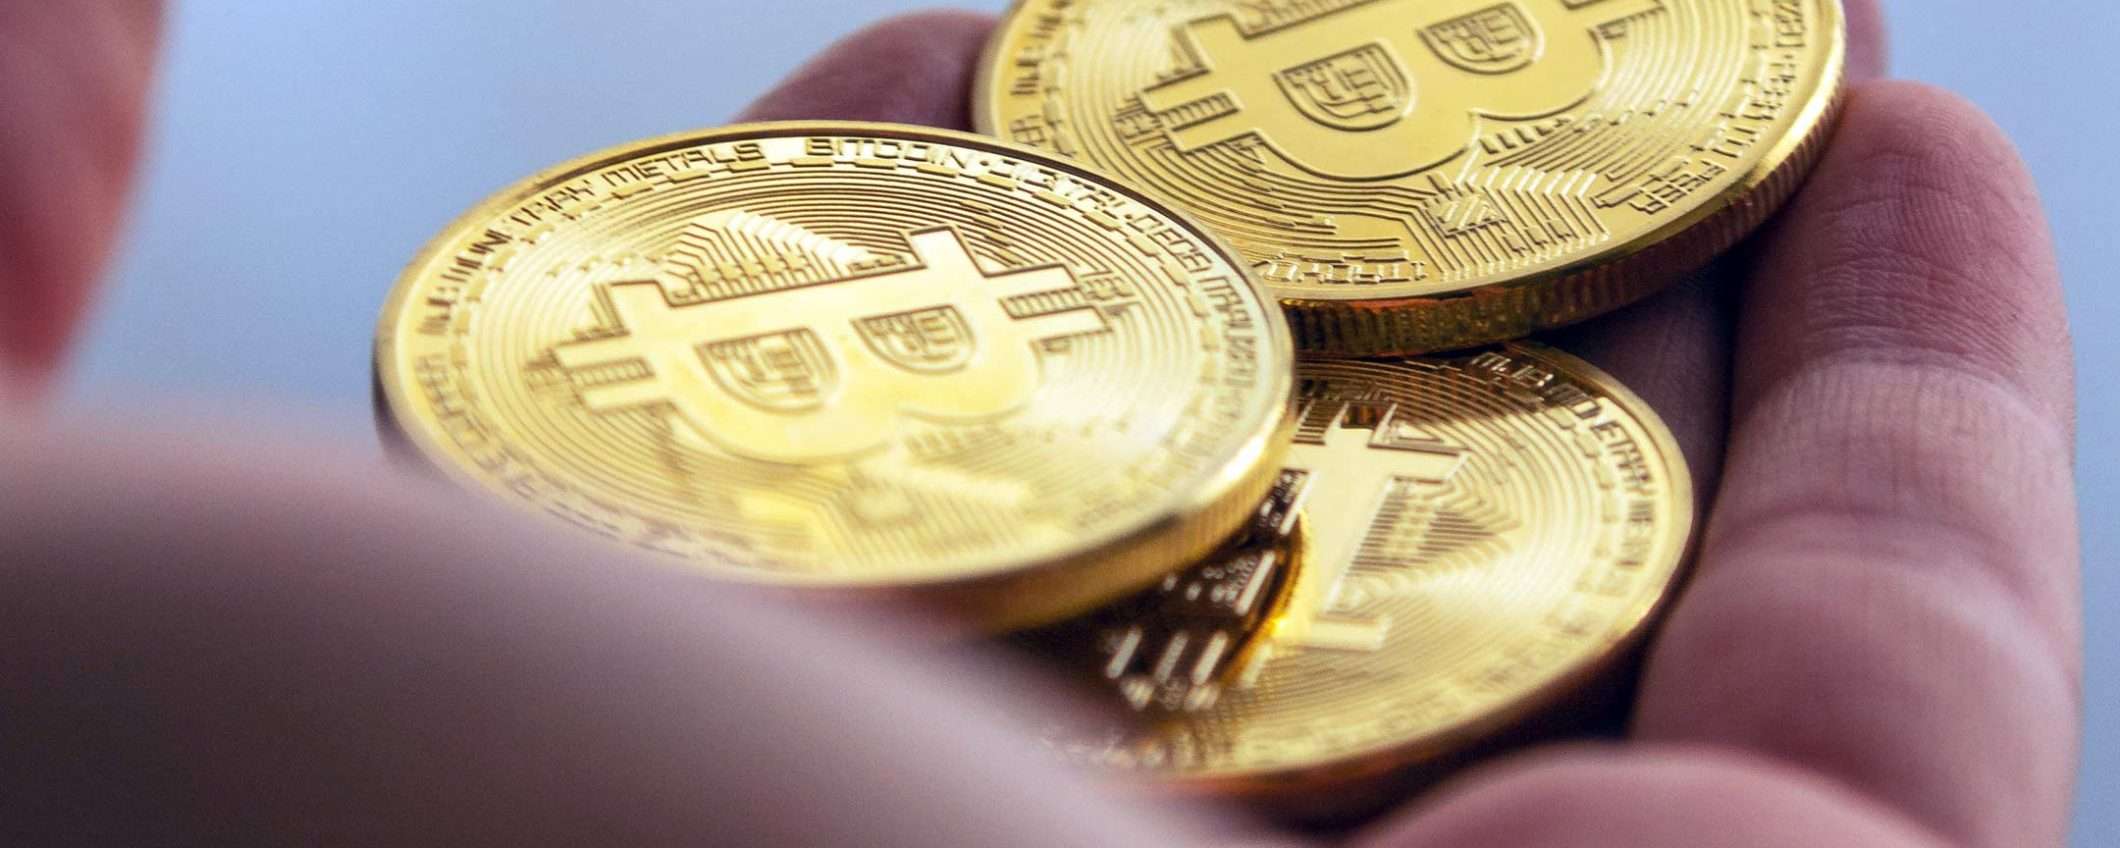 Bitcoin, forte crescita prevista entro fine anno